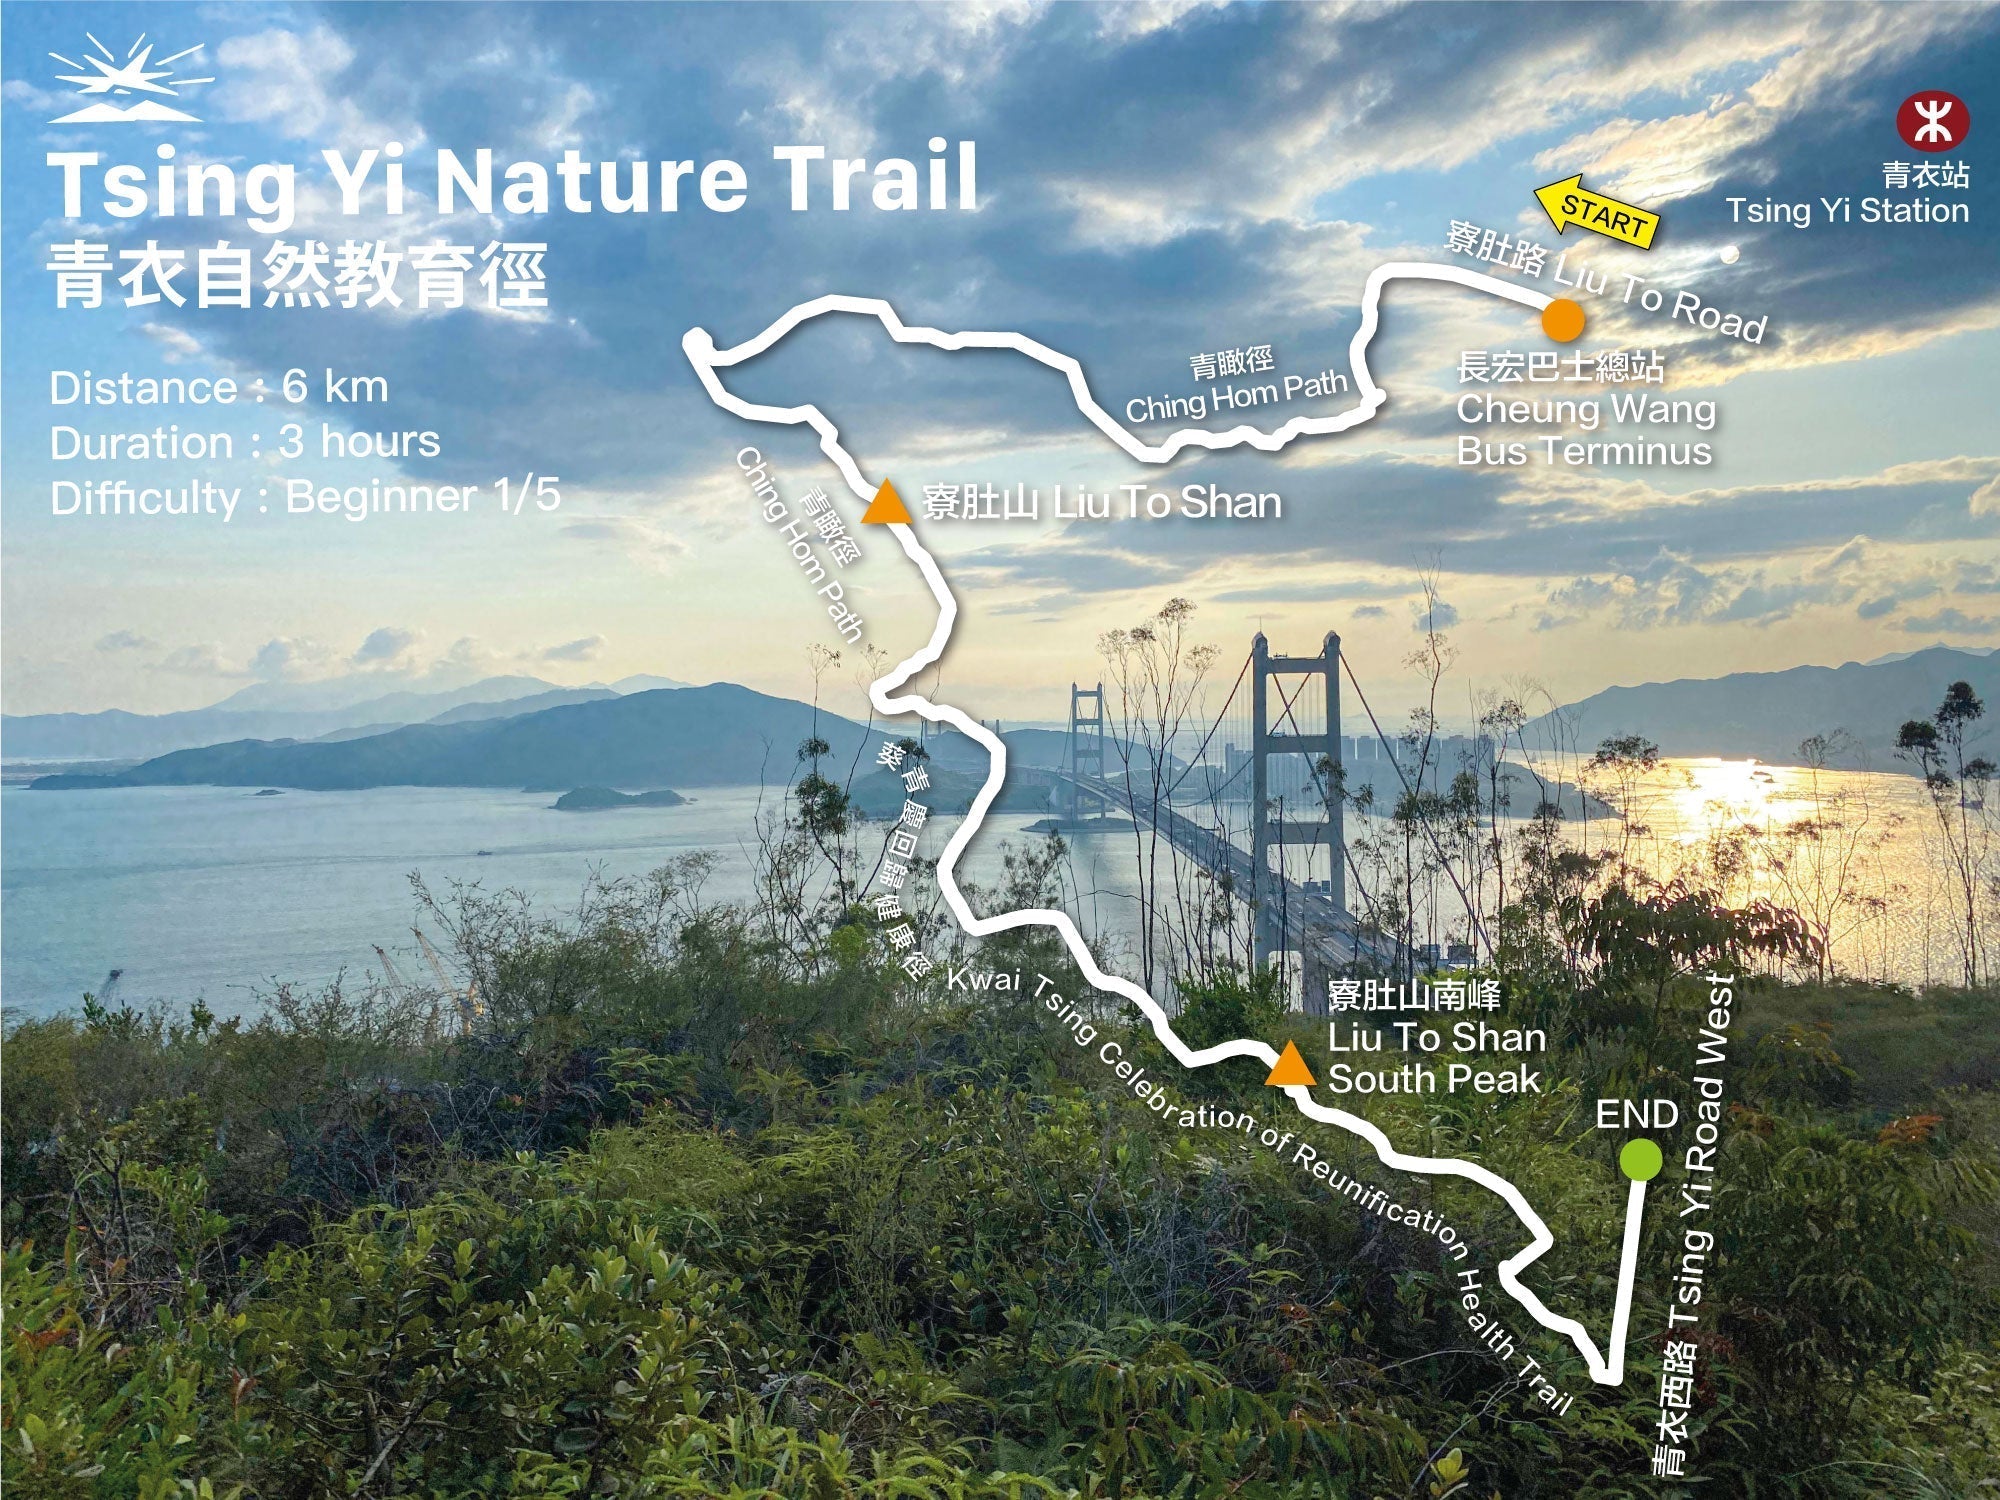 Tsing Yi Nature Trail